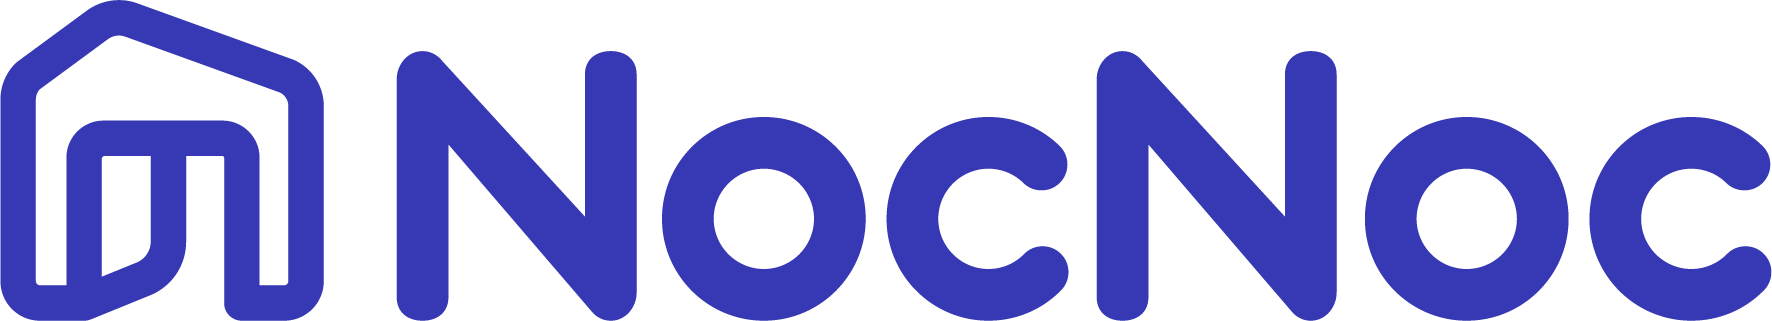 zaviago-logo